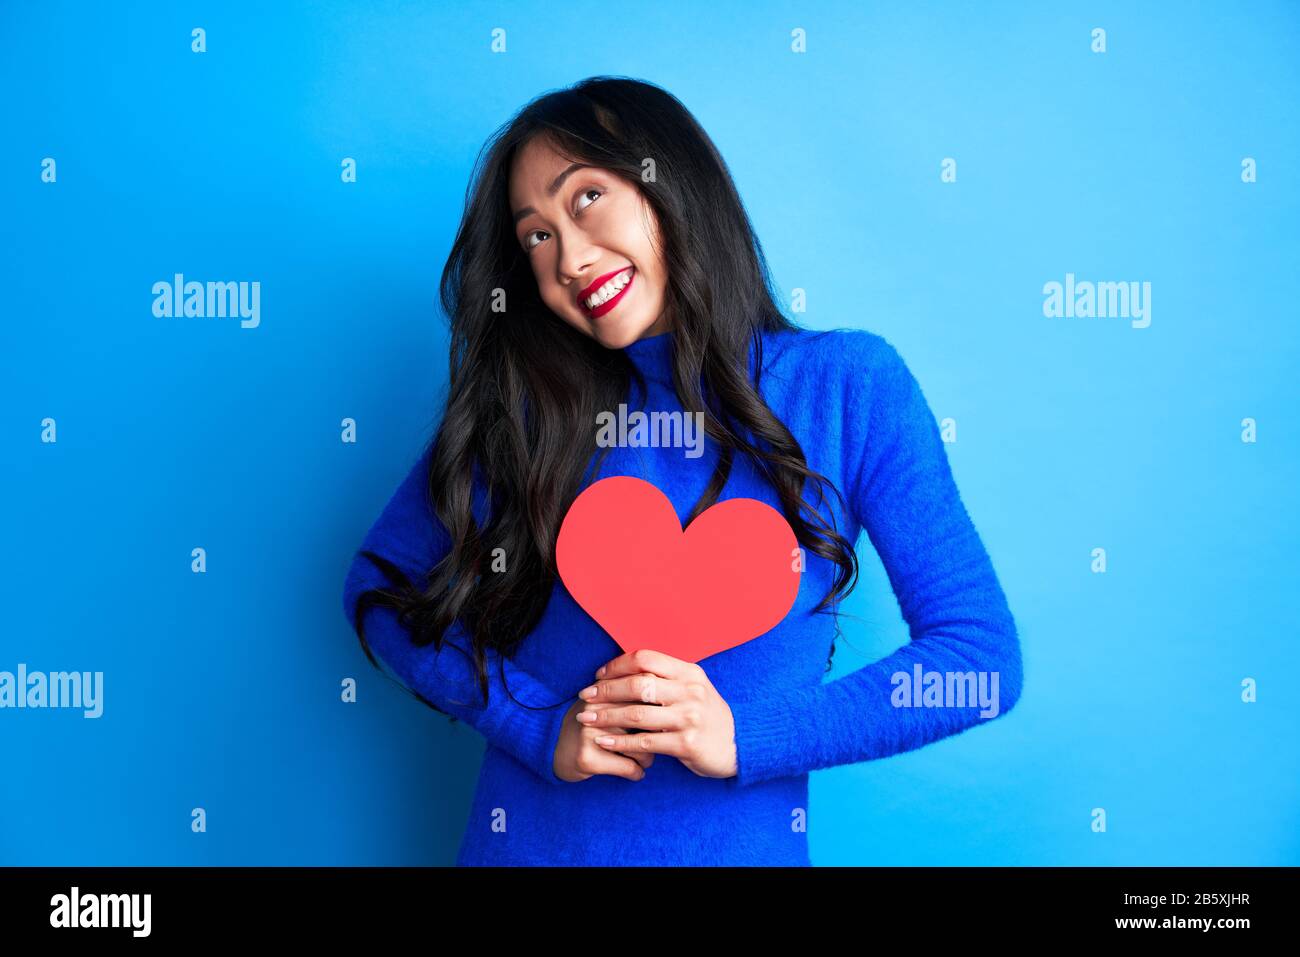 Une femme souriante et heureuse qui tient un grand cœur en papier dans ses mains, regarde isolée sur fond bleu. Concept d'amour Banque D'Images